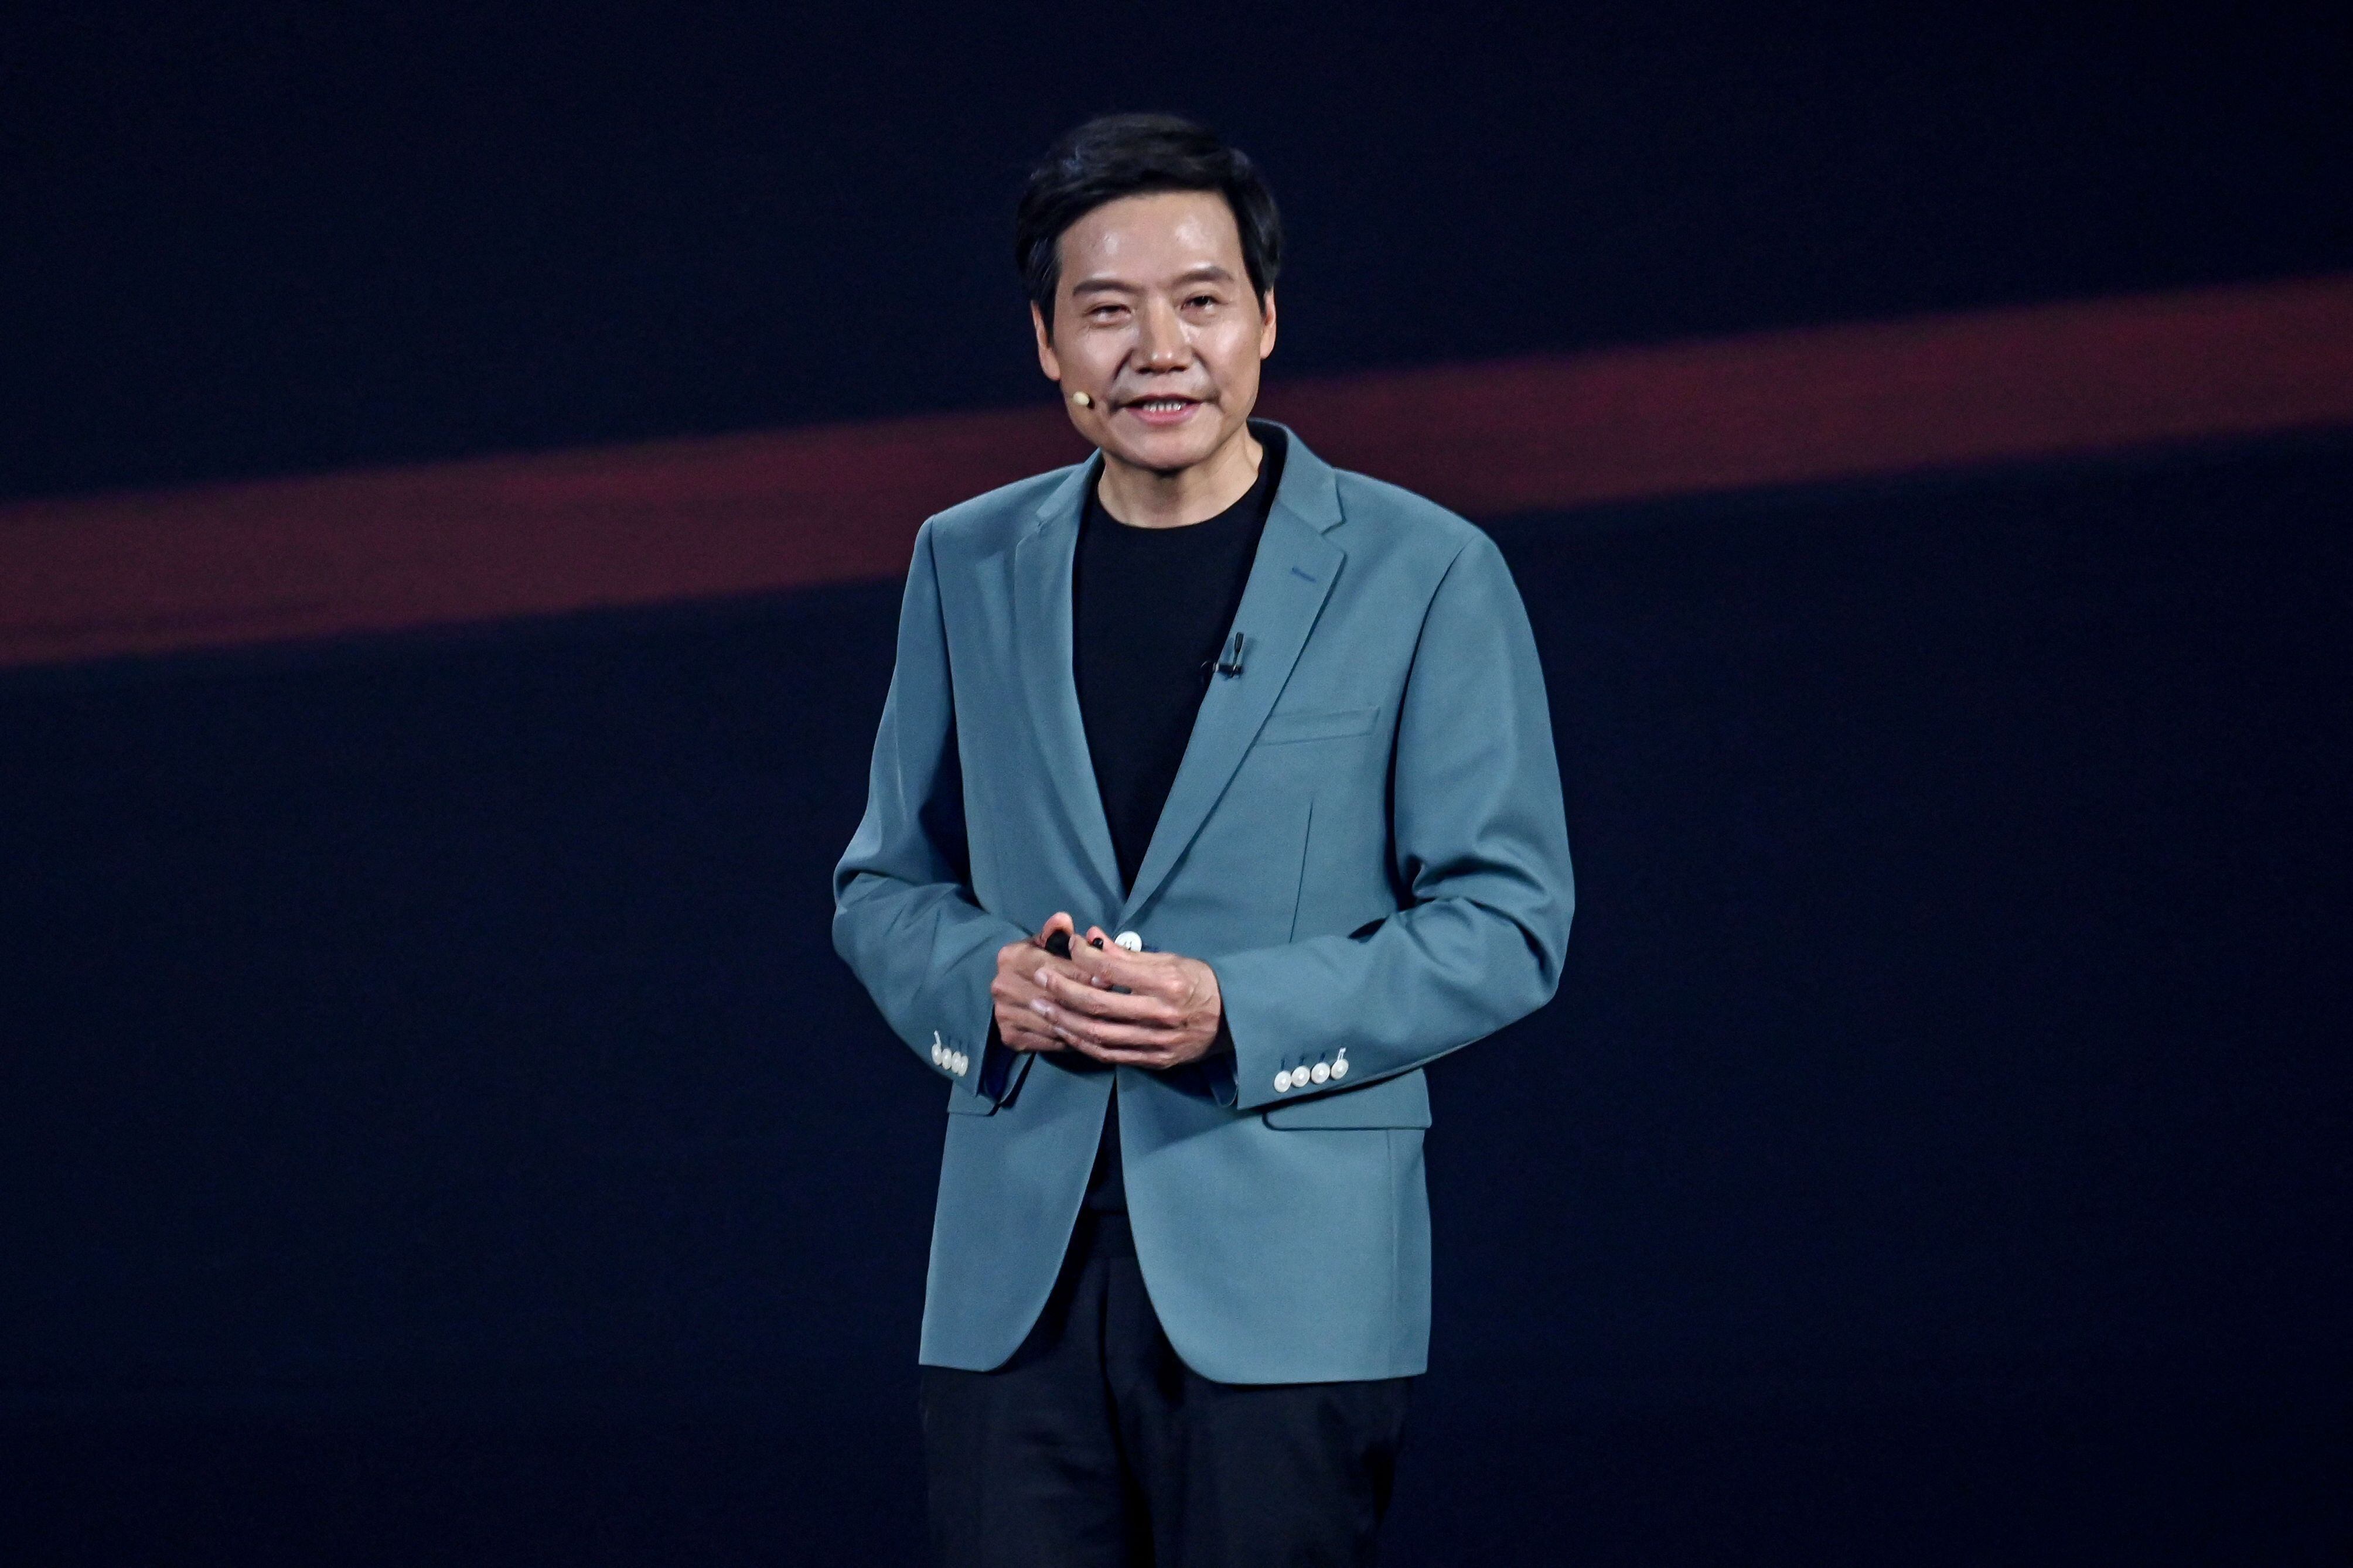 El modelo básico costará cerca de $30.000, dijo el presidente de la compañía, Lei Jun, en una conferencia de prensa de lanzamiento en Pekín.(Foto: Micheal Zhang / AFP)